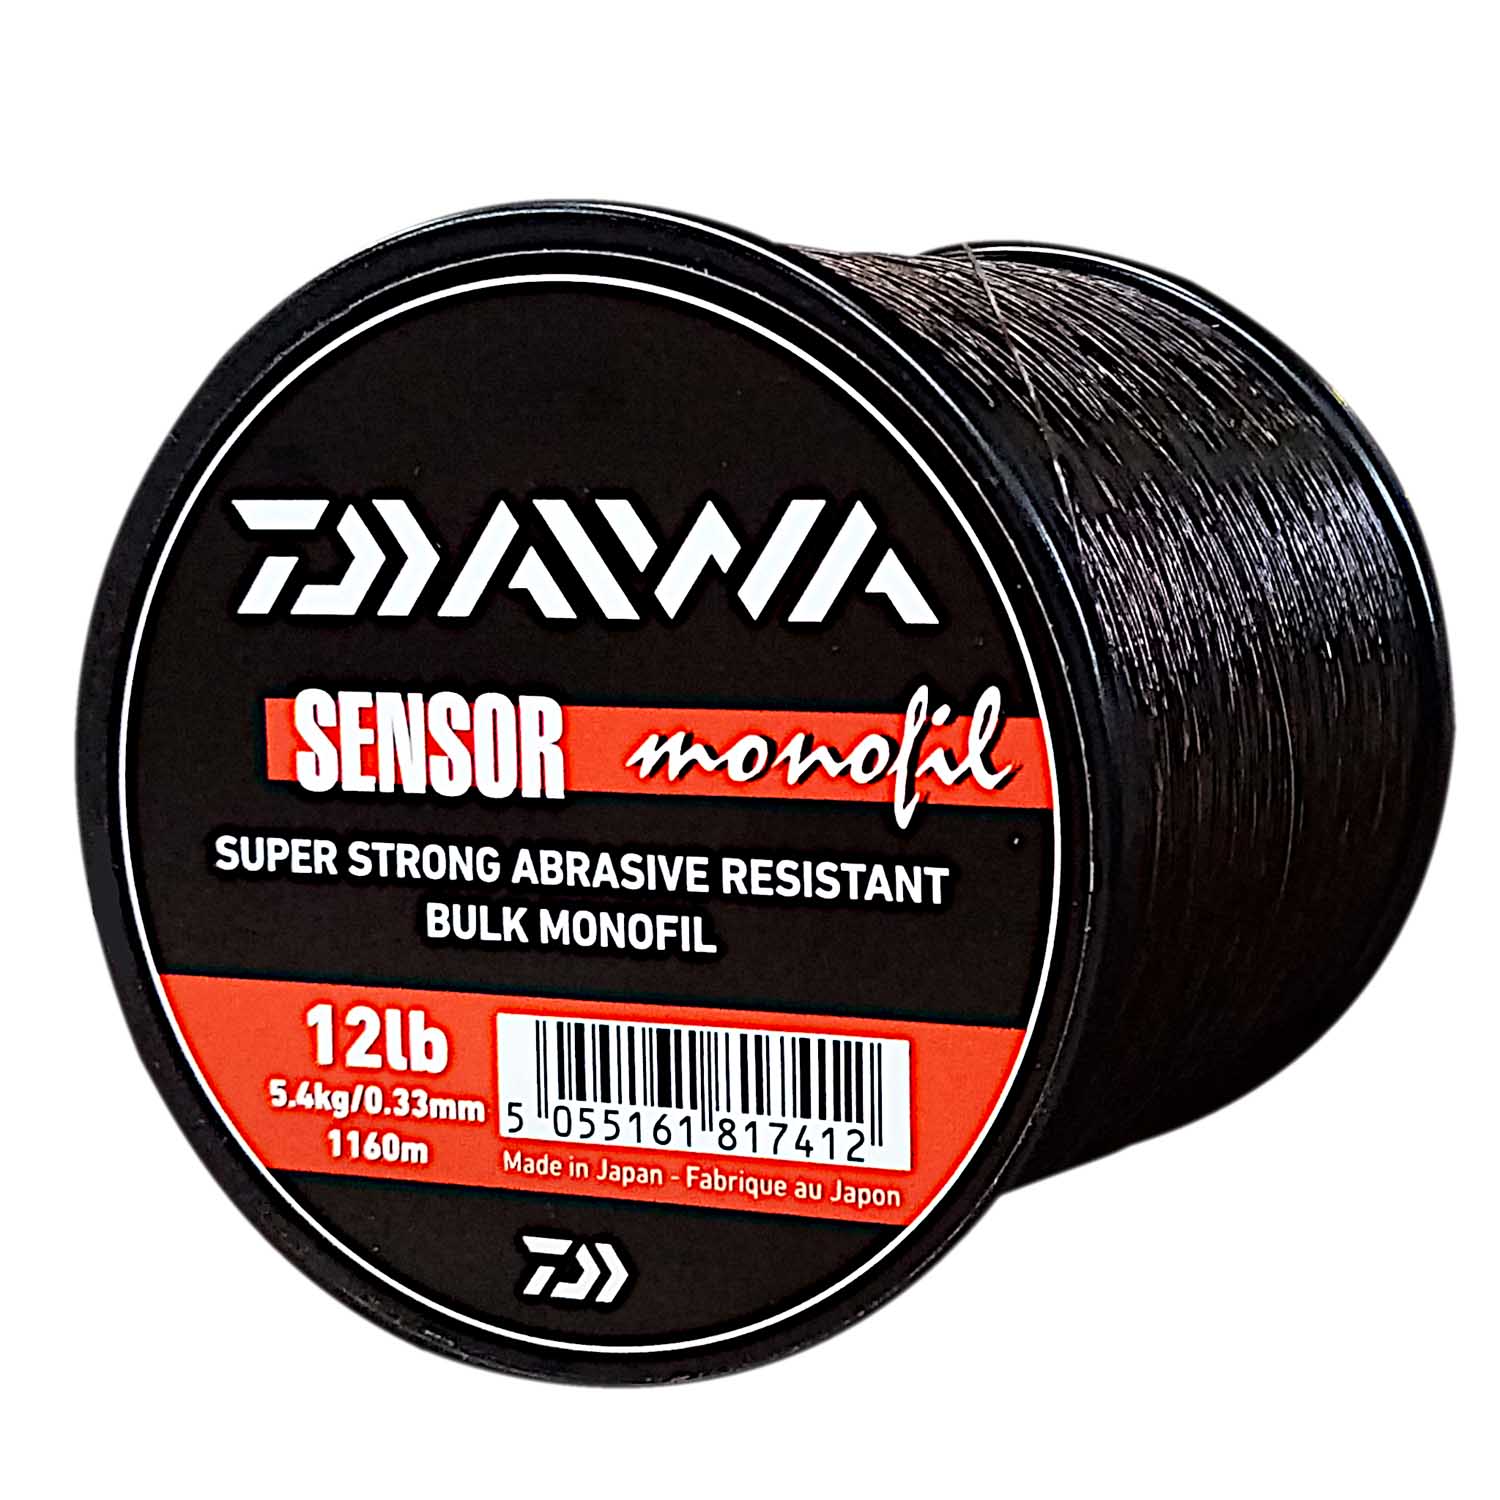 Daiwa Sensor Carp Nylon Fishing Line 5.4KG/12LB .33MM Colour Brown